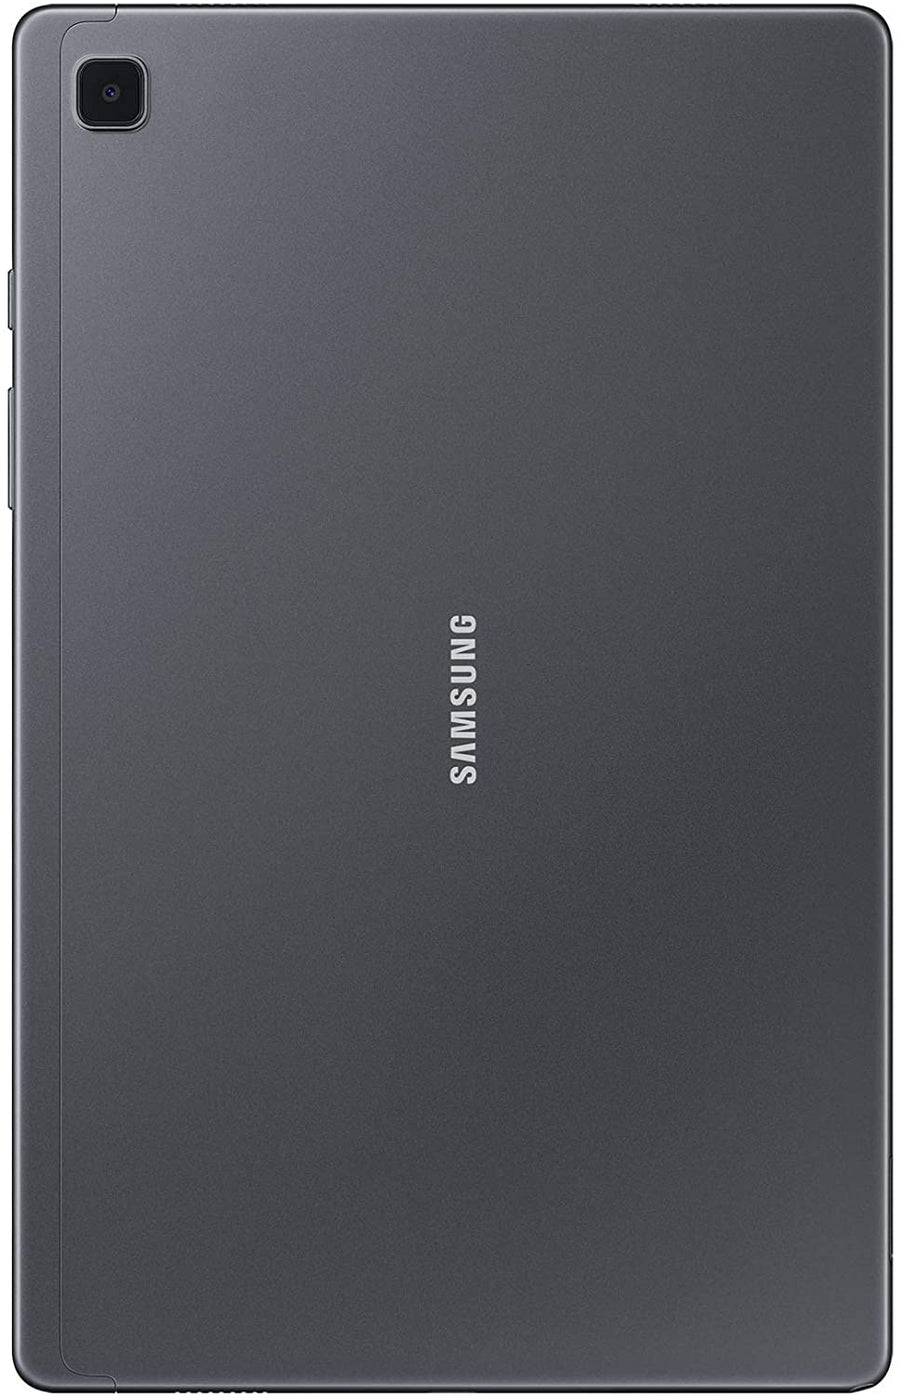 Samsung Galaxy Tab A7 32 GB Wi-Fi 10.4